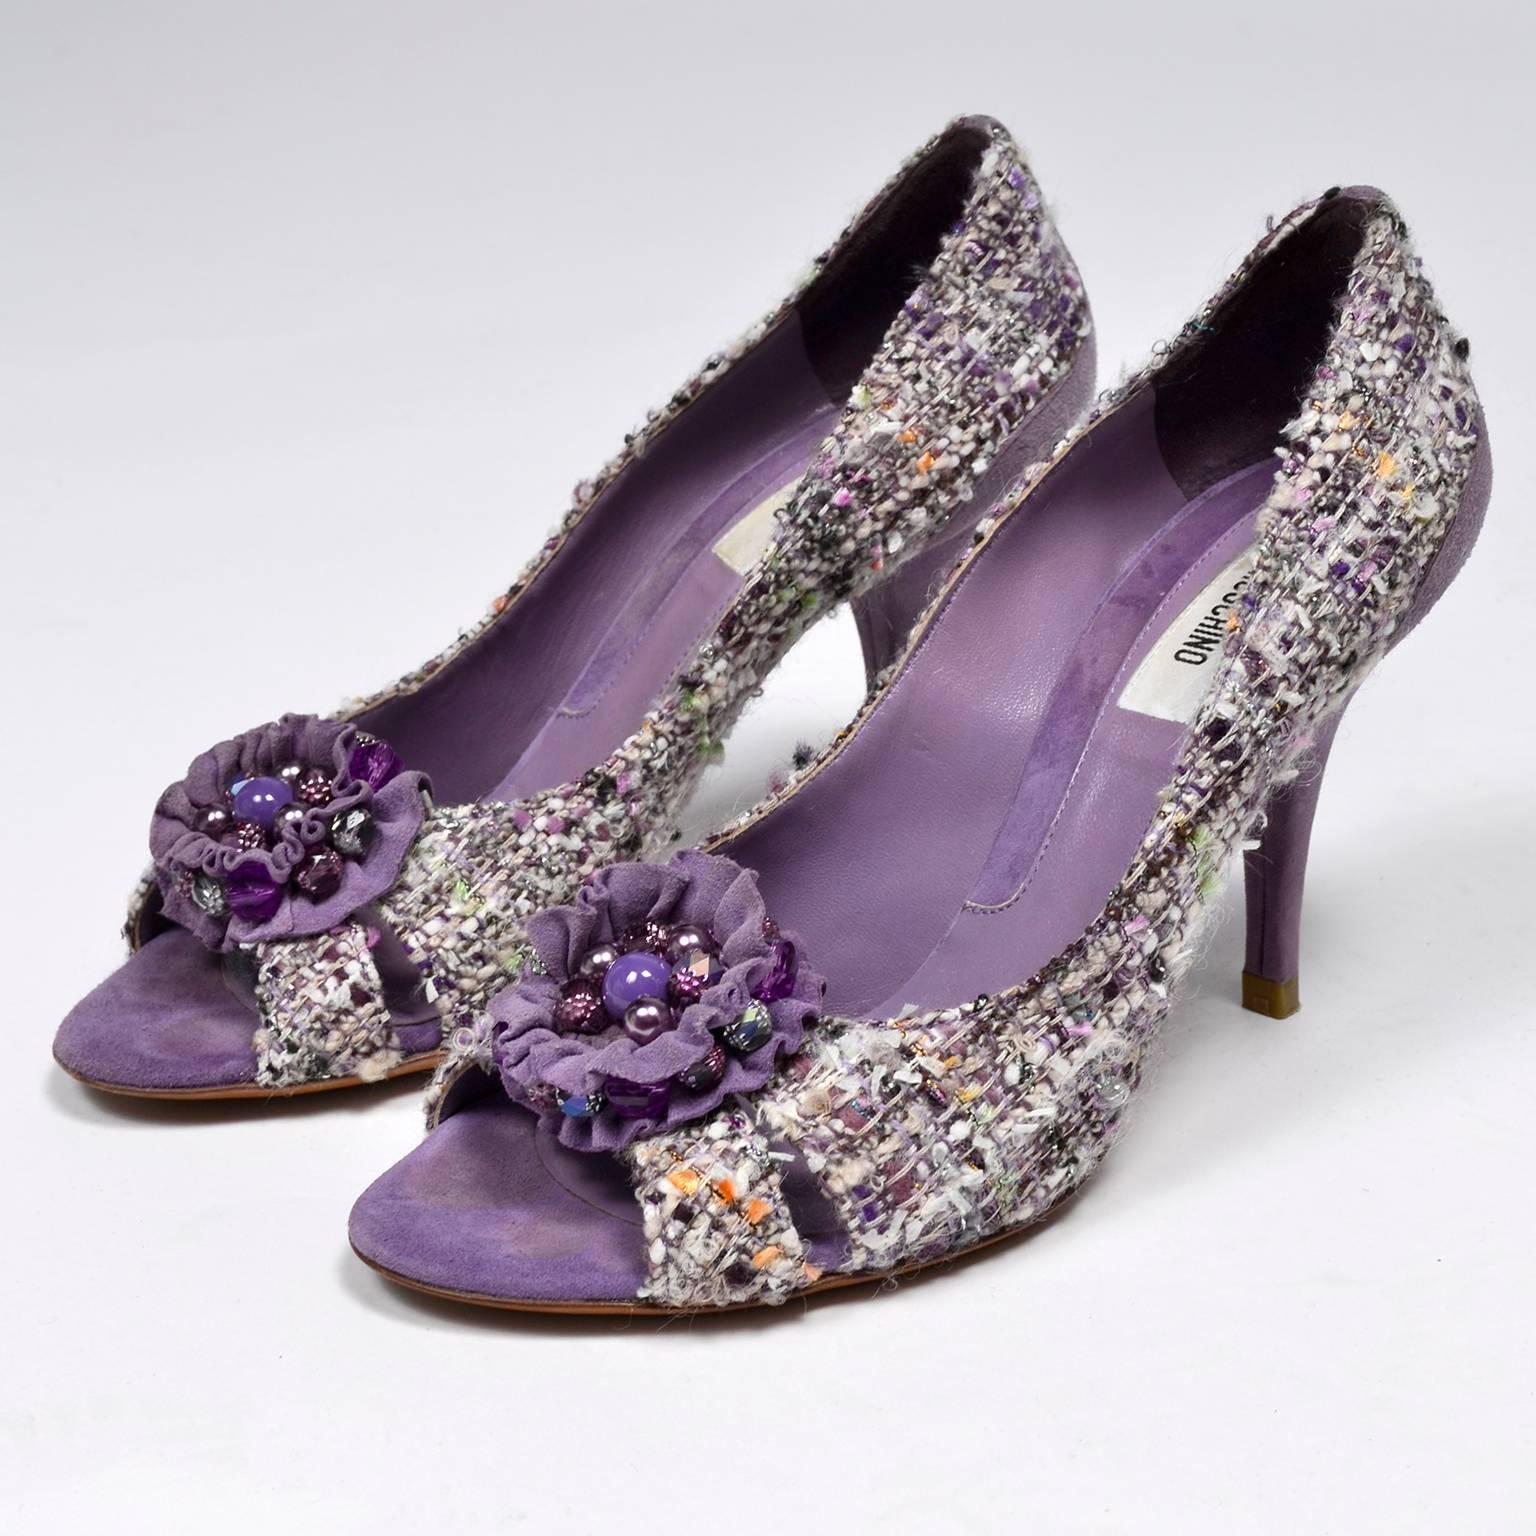 Dies ist ein großes Paar Vintage Moschino lila Tweed offene Zehe Schuhe mit Perlen Wildleder Schleifen oder Rosetten und 3,5 